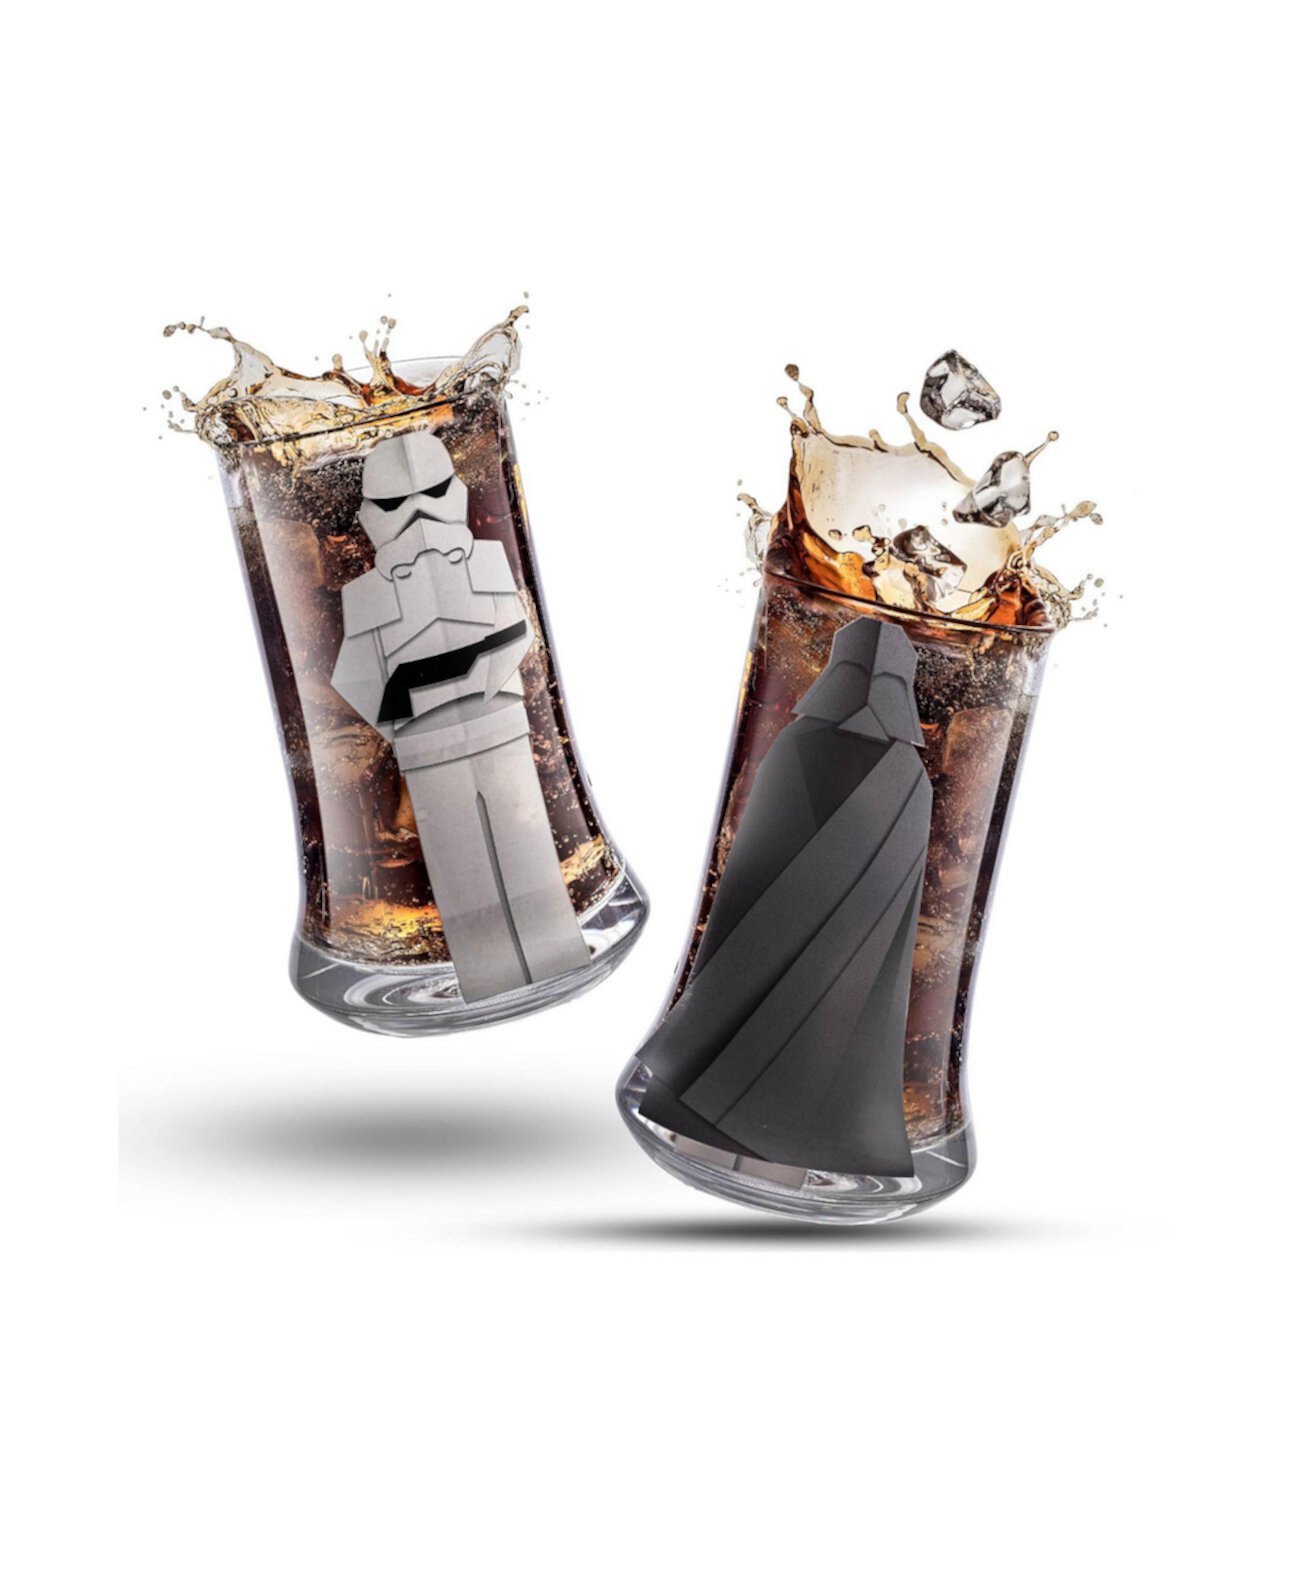 Стаканы для питья «Звездные войны: Остерегайтесь темной стороны», набор из 2 шт. JoyJolt